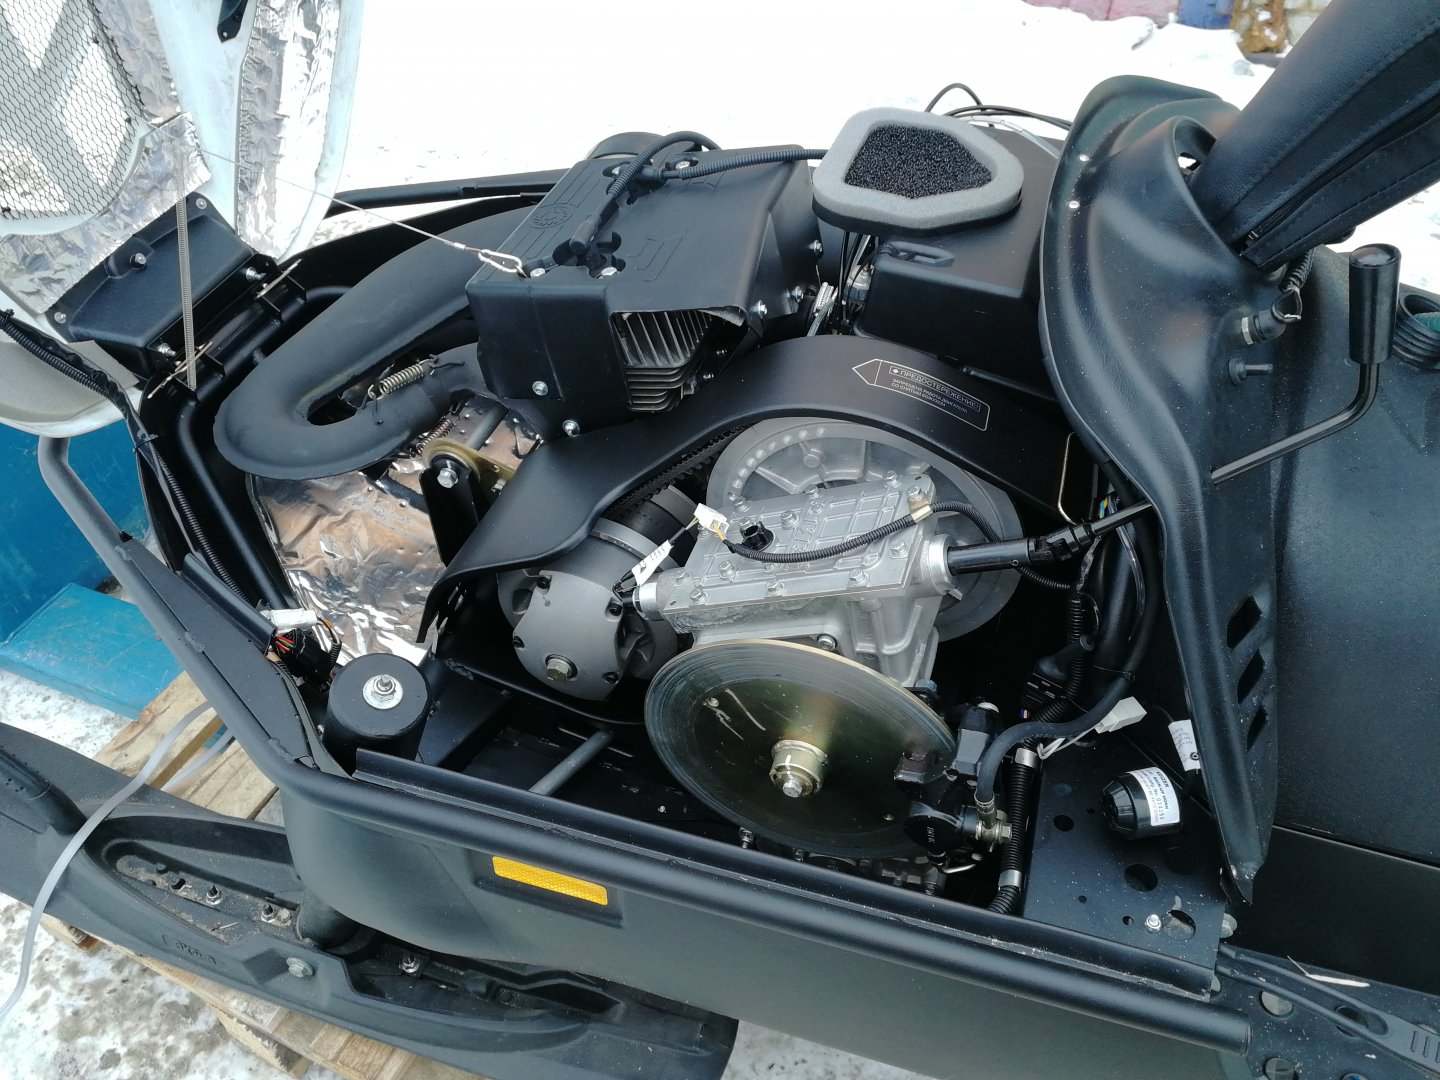 Двигатель рмз 550 технические характеристики